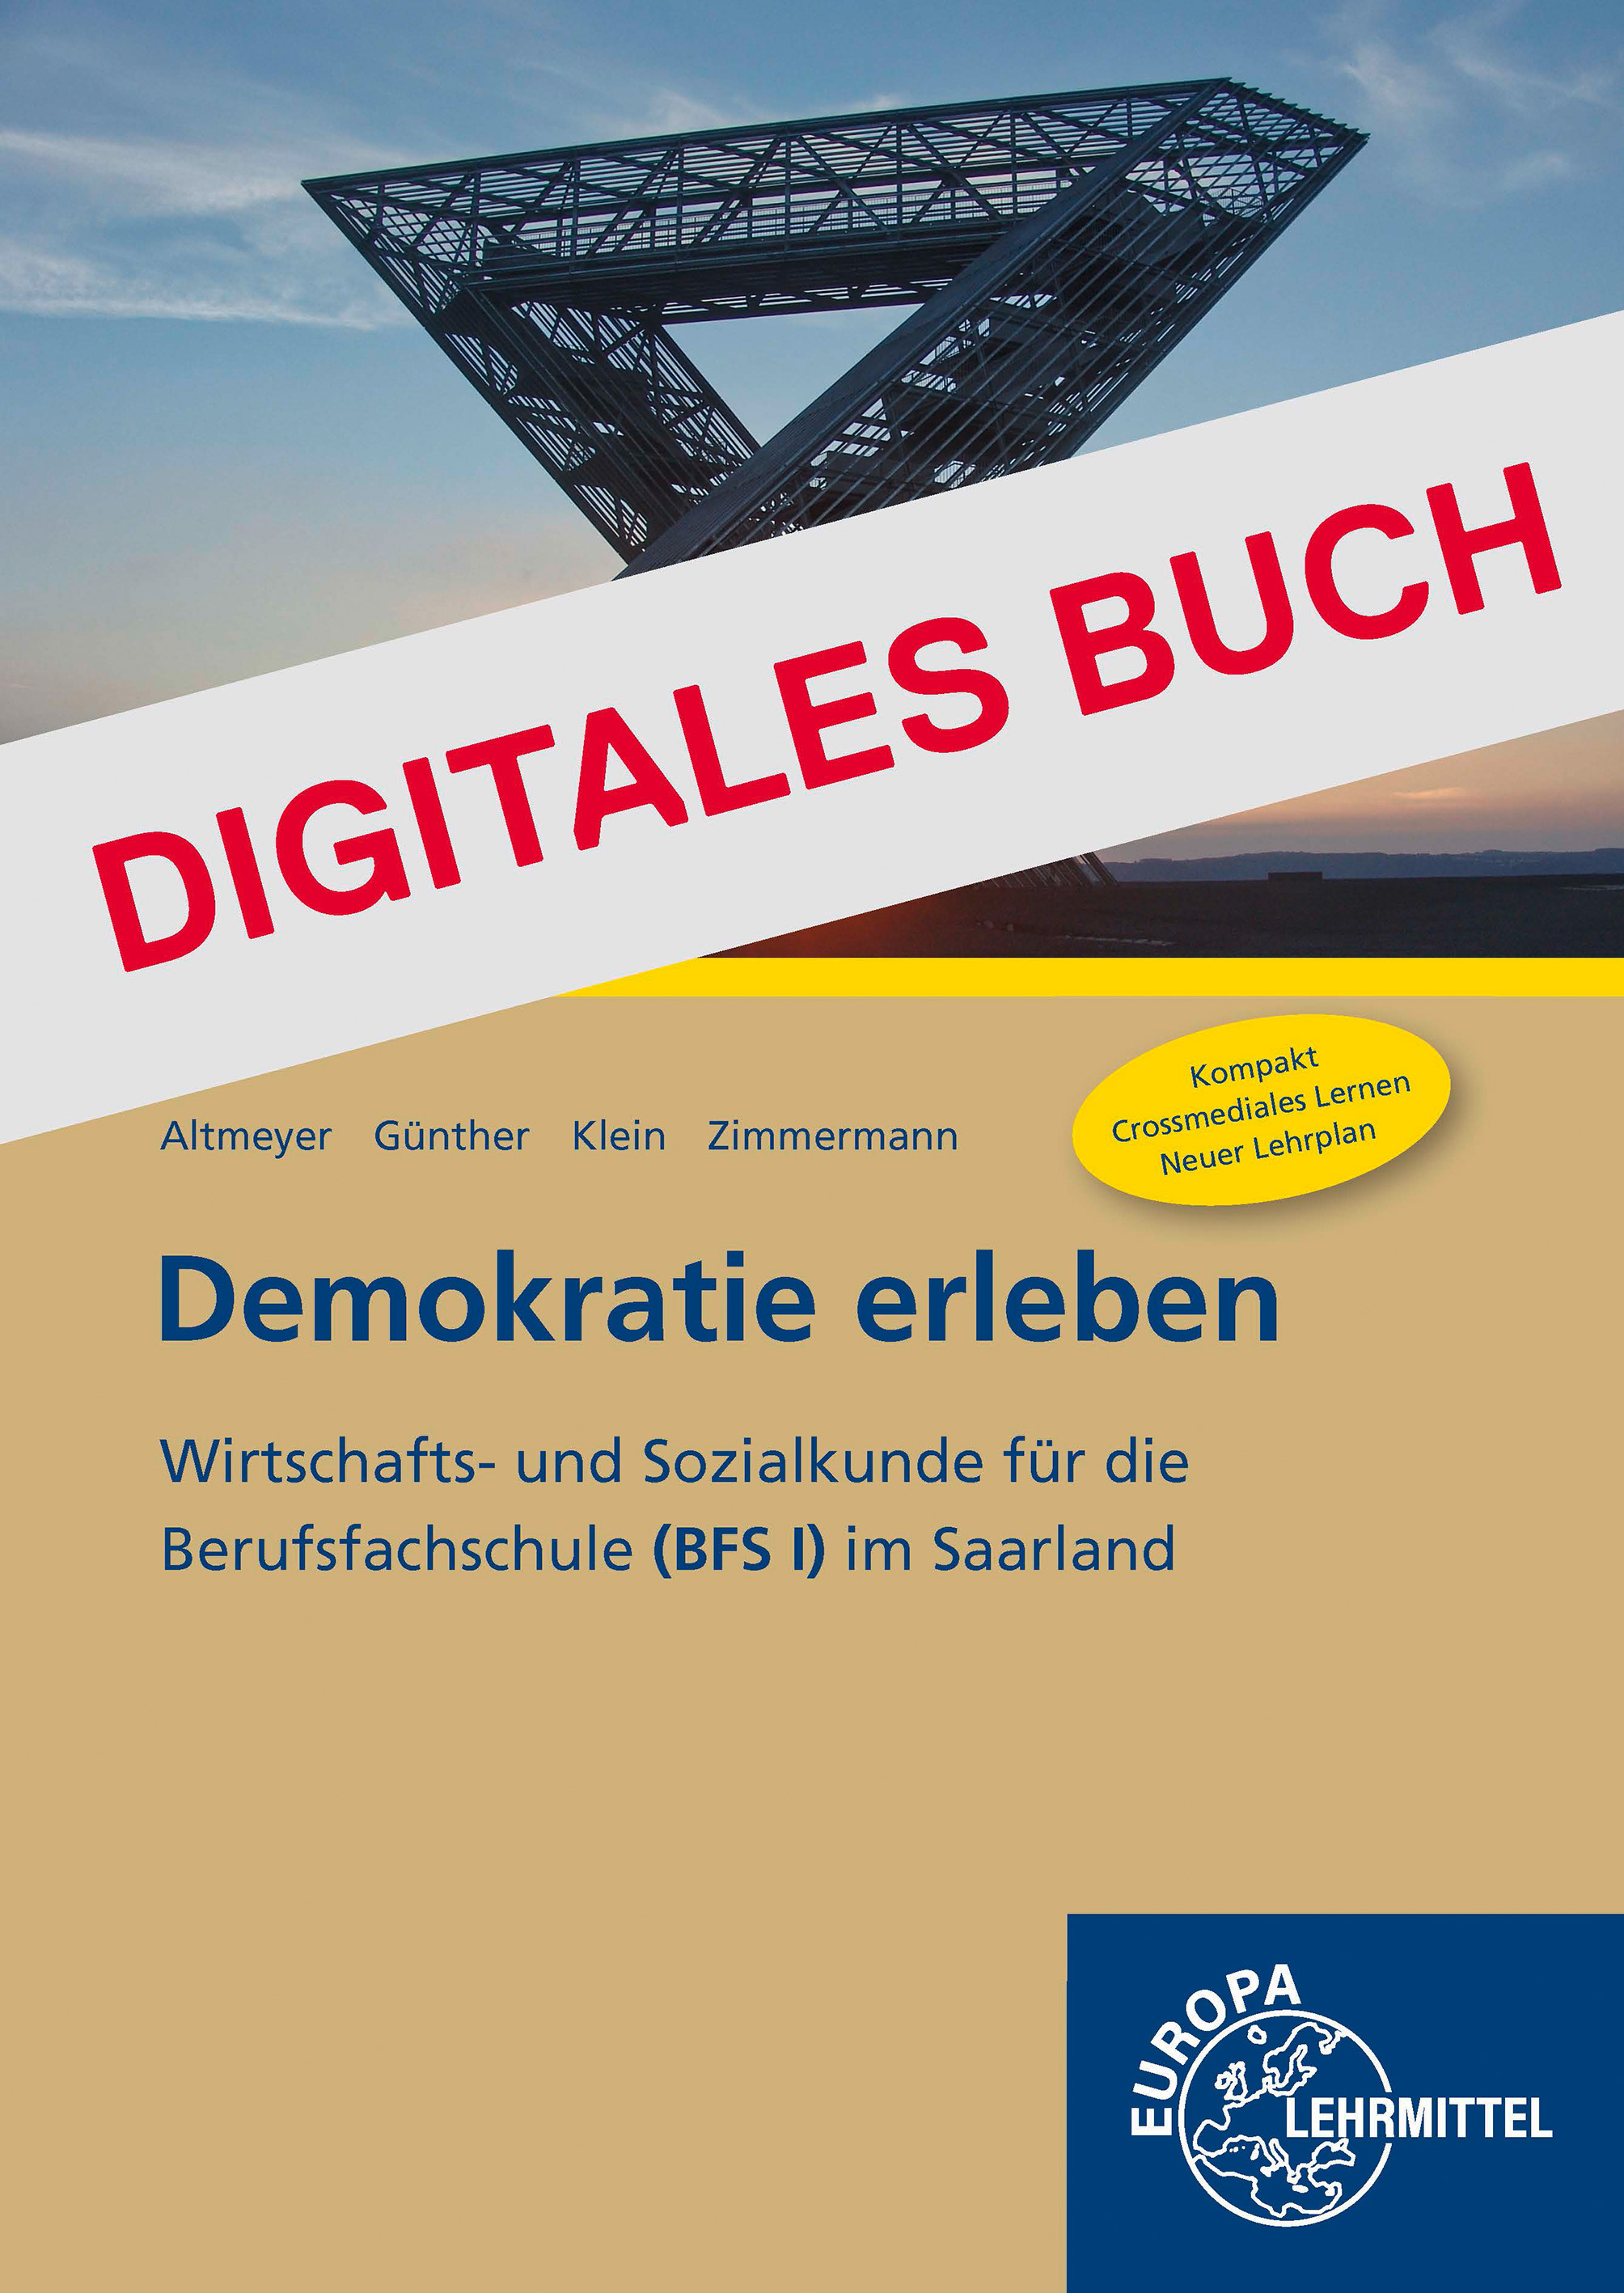 Demokratie erleben (BFS) - Digitales Buch